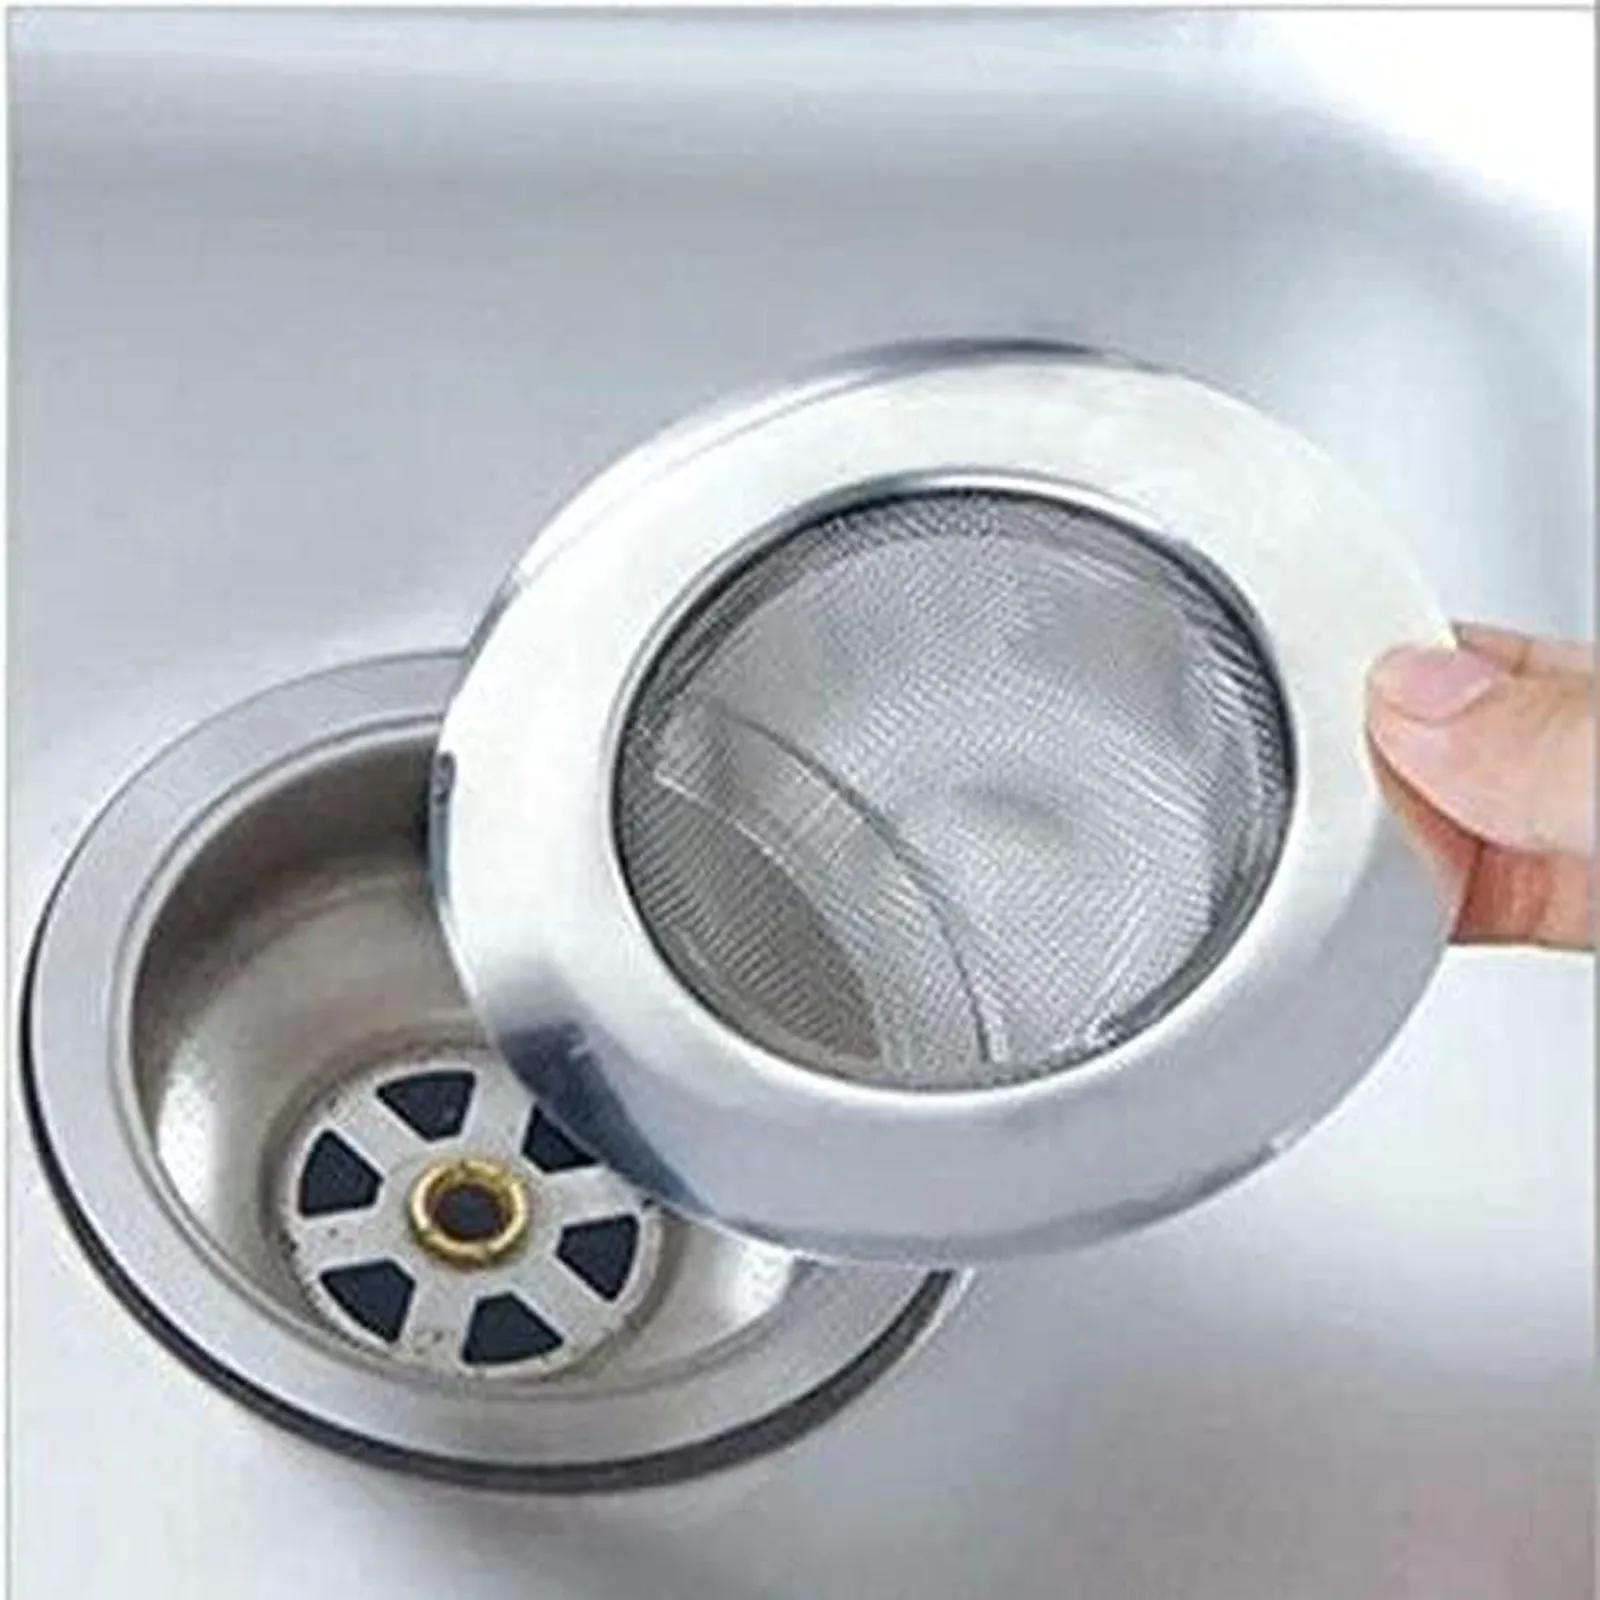 Stainless Steel Home Bath Kitchen Sink Strainer Mesh Basin Filter Net Drainer 